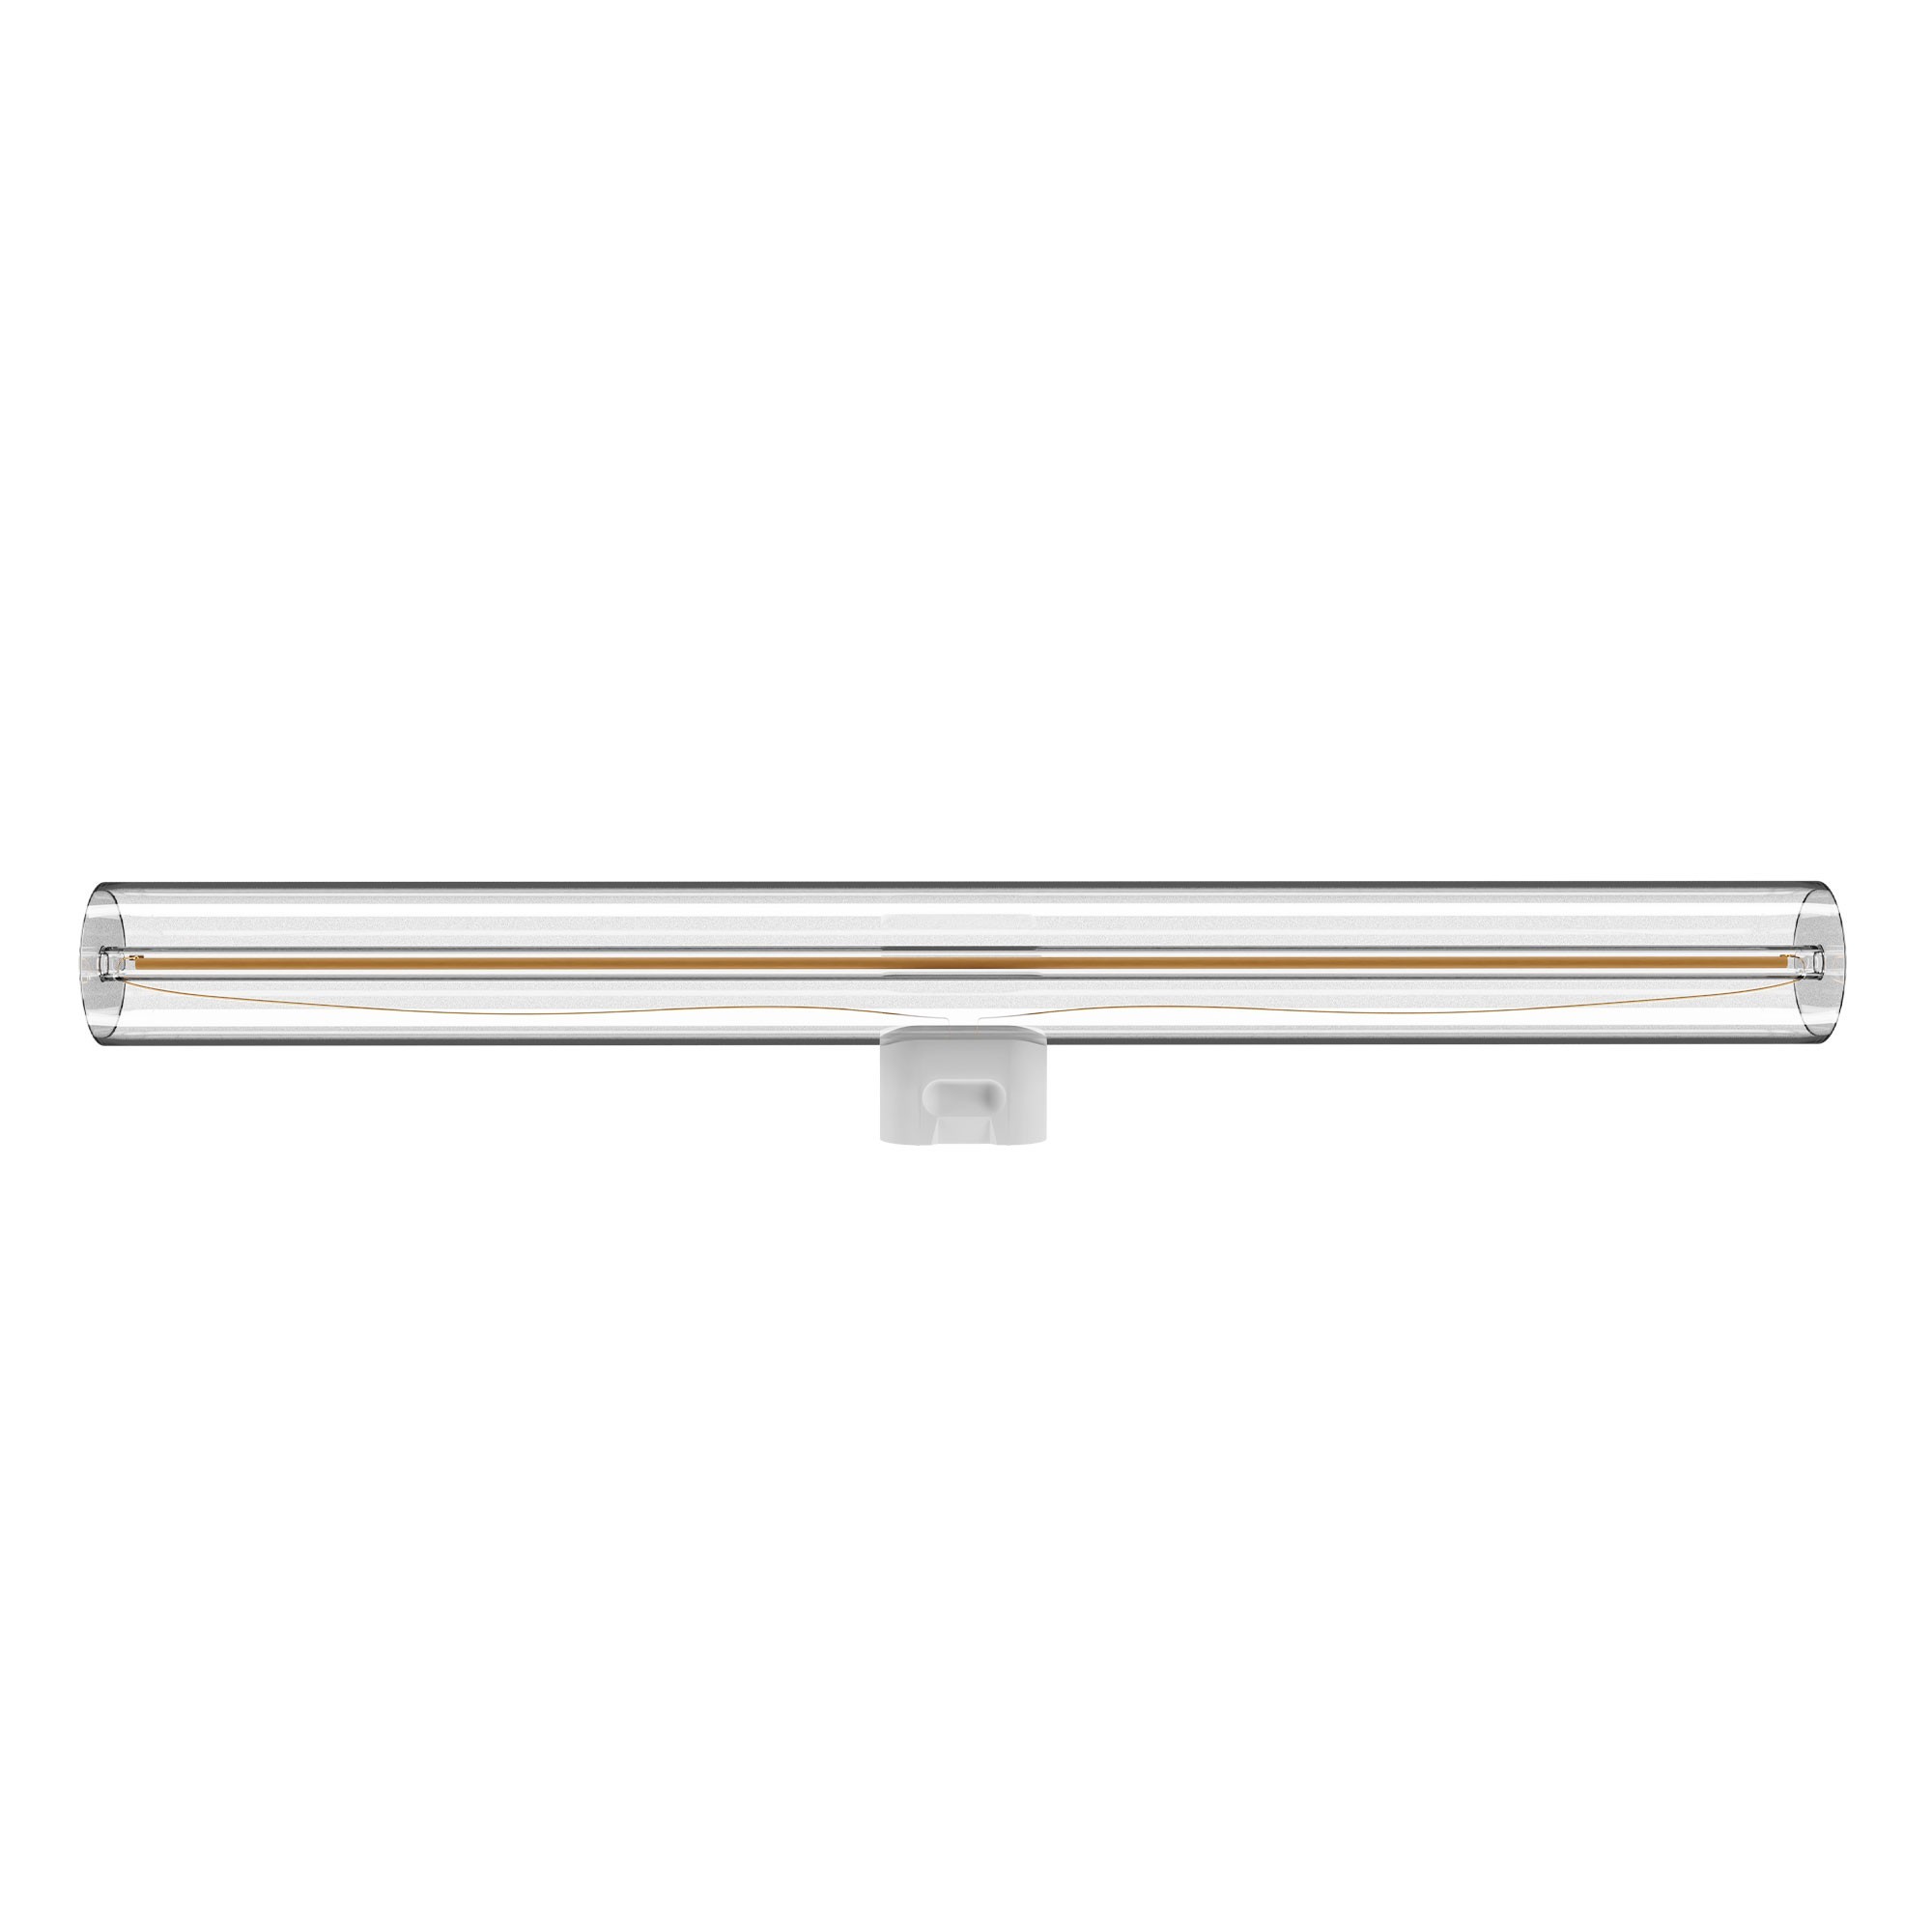 S01 - Lampadina LED lineare L300, S14d, 6W, 2700K, 520Lm, con vetro trasparente